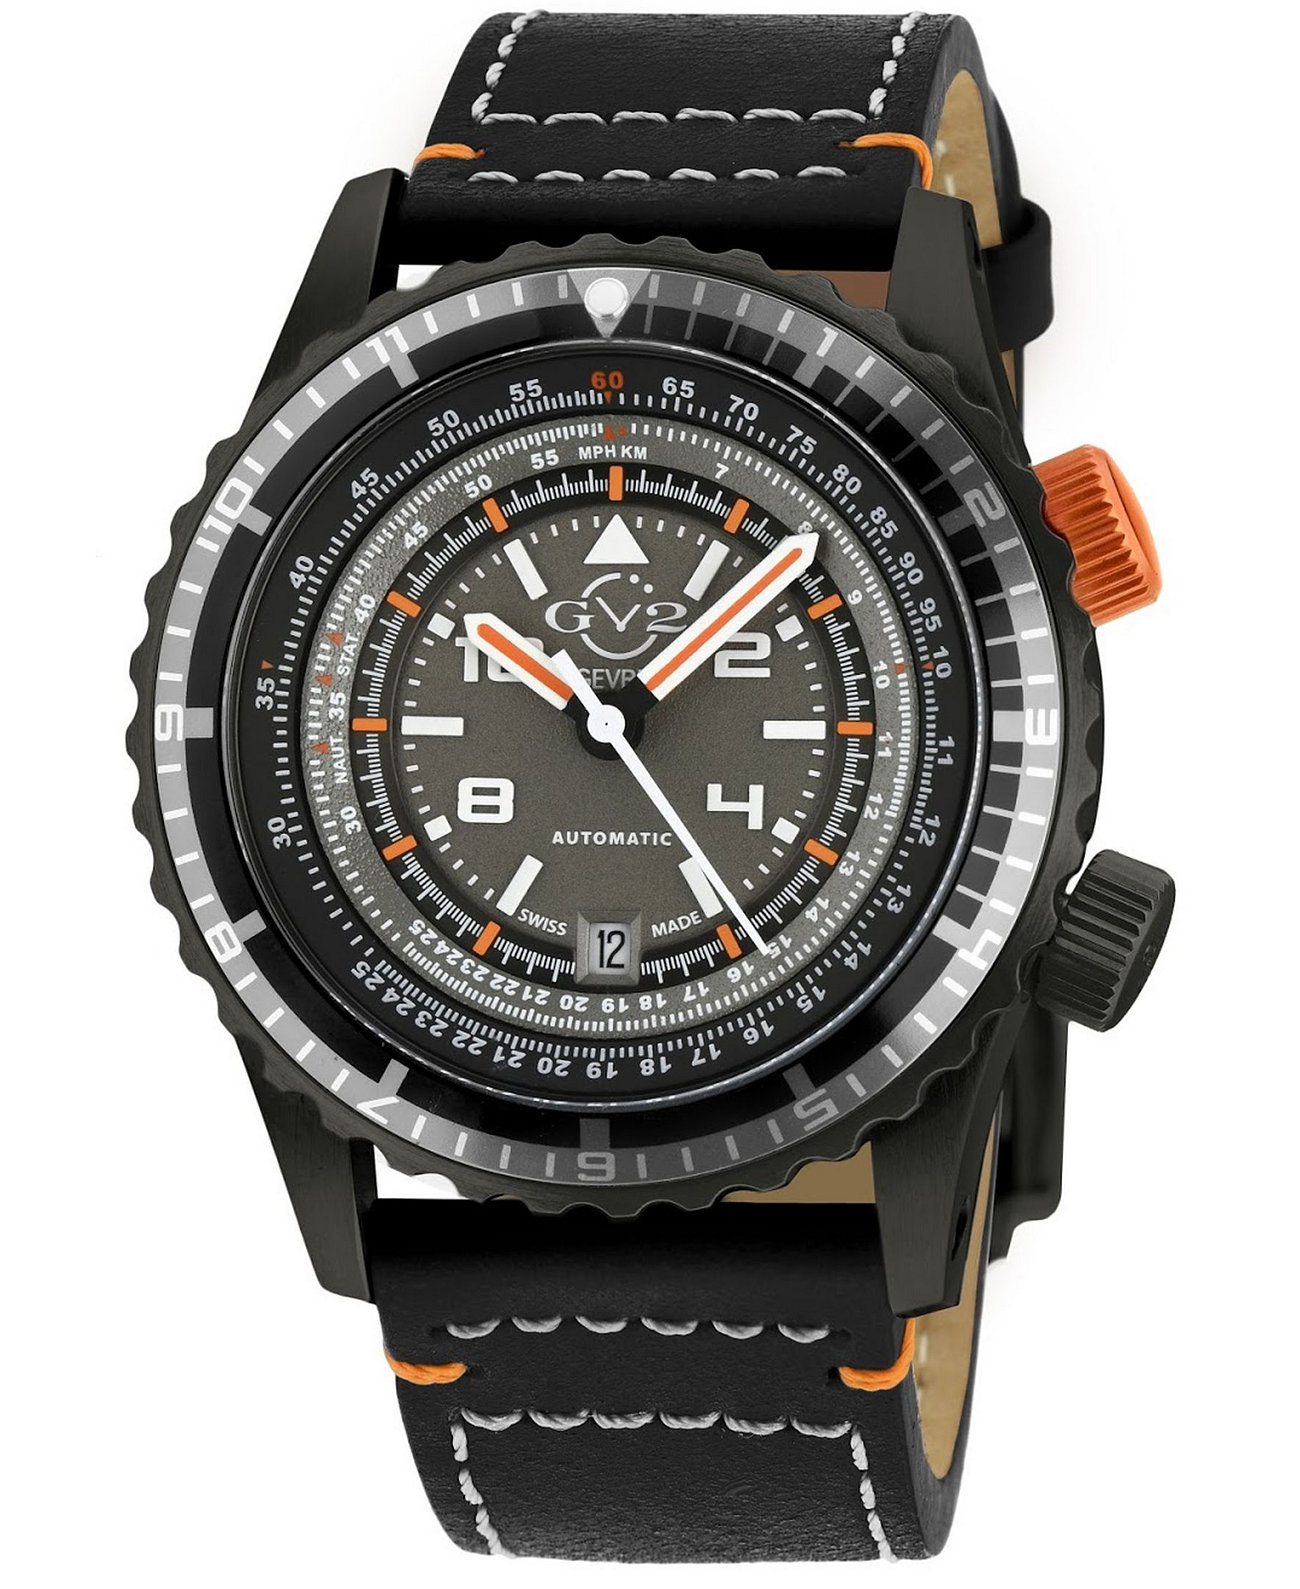 Мужские часы Contasecondi GV2 с черным кожаным автоматическим ремешком, 43 мм Gevril